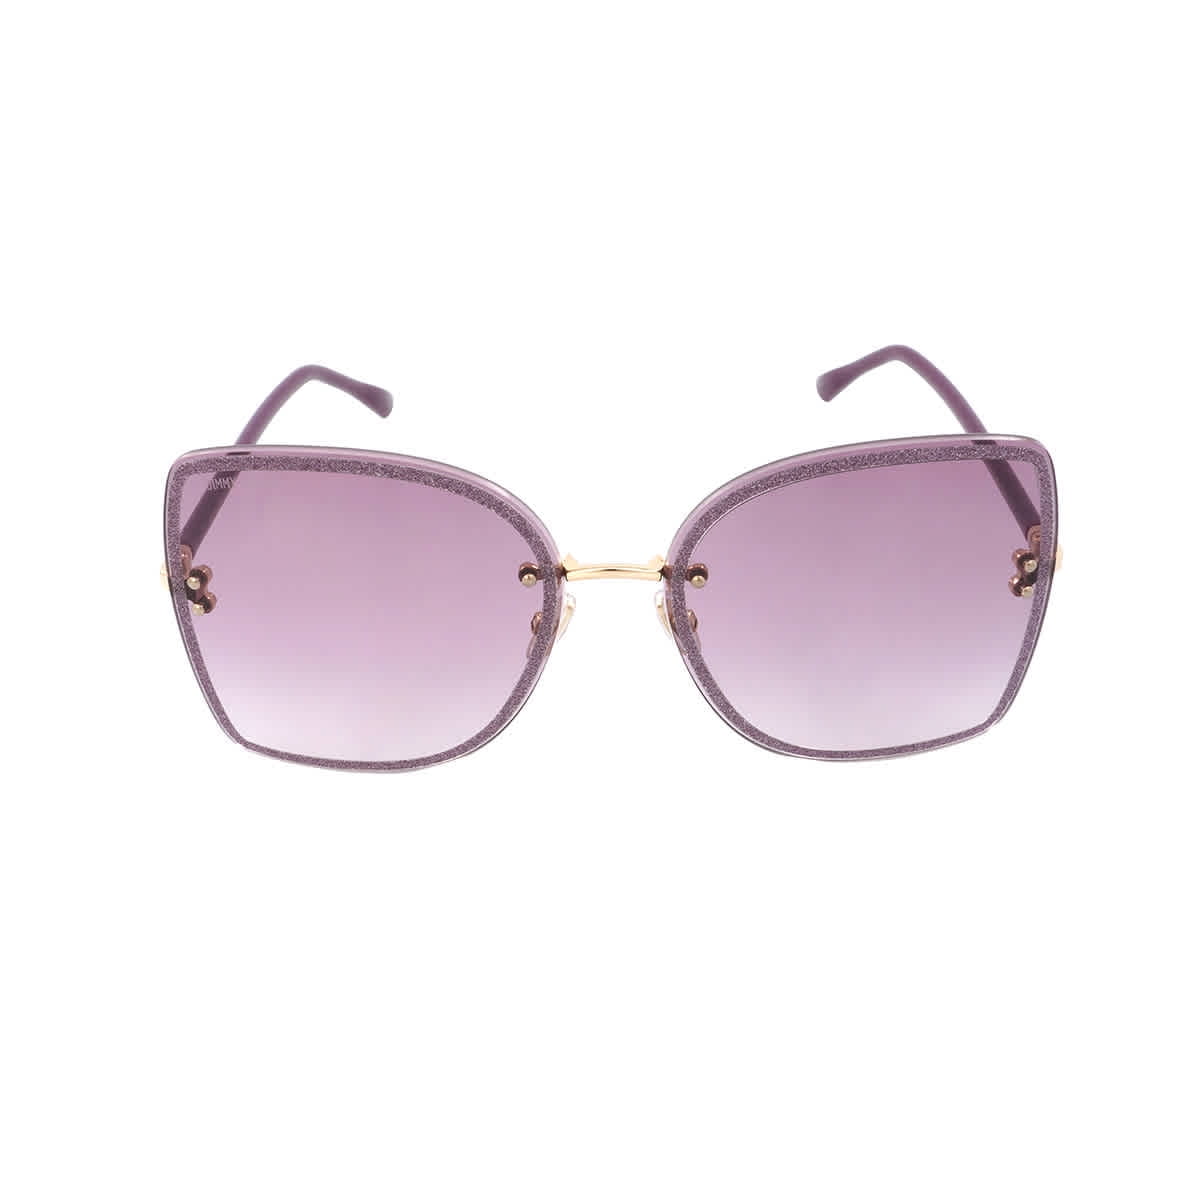 Fairchild - Sunglasses for Women | Billabong